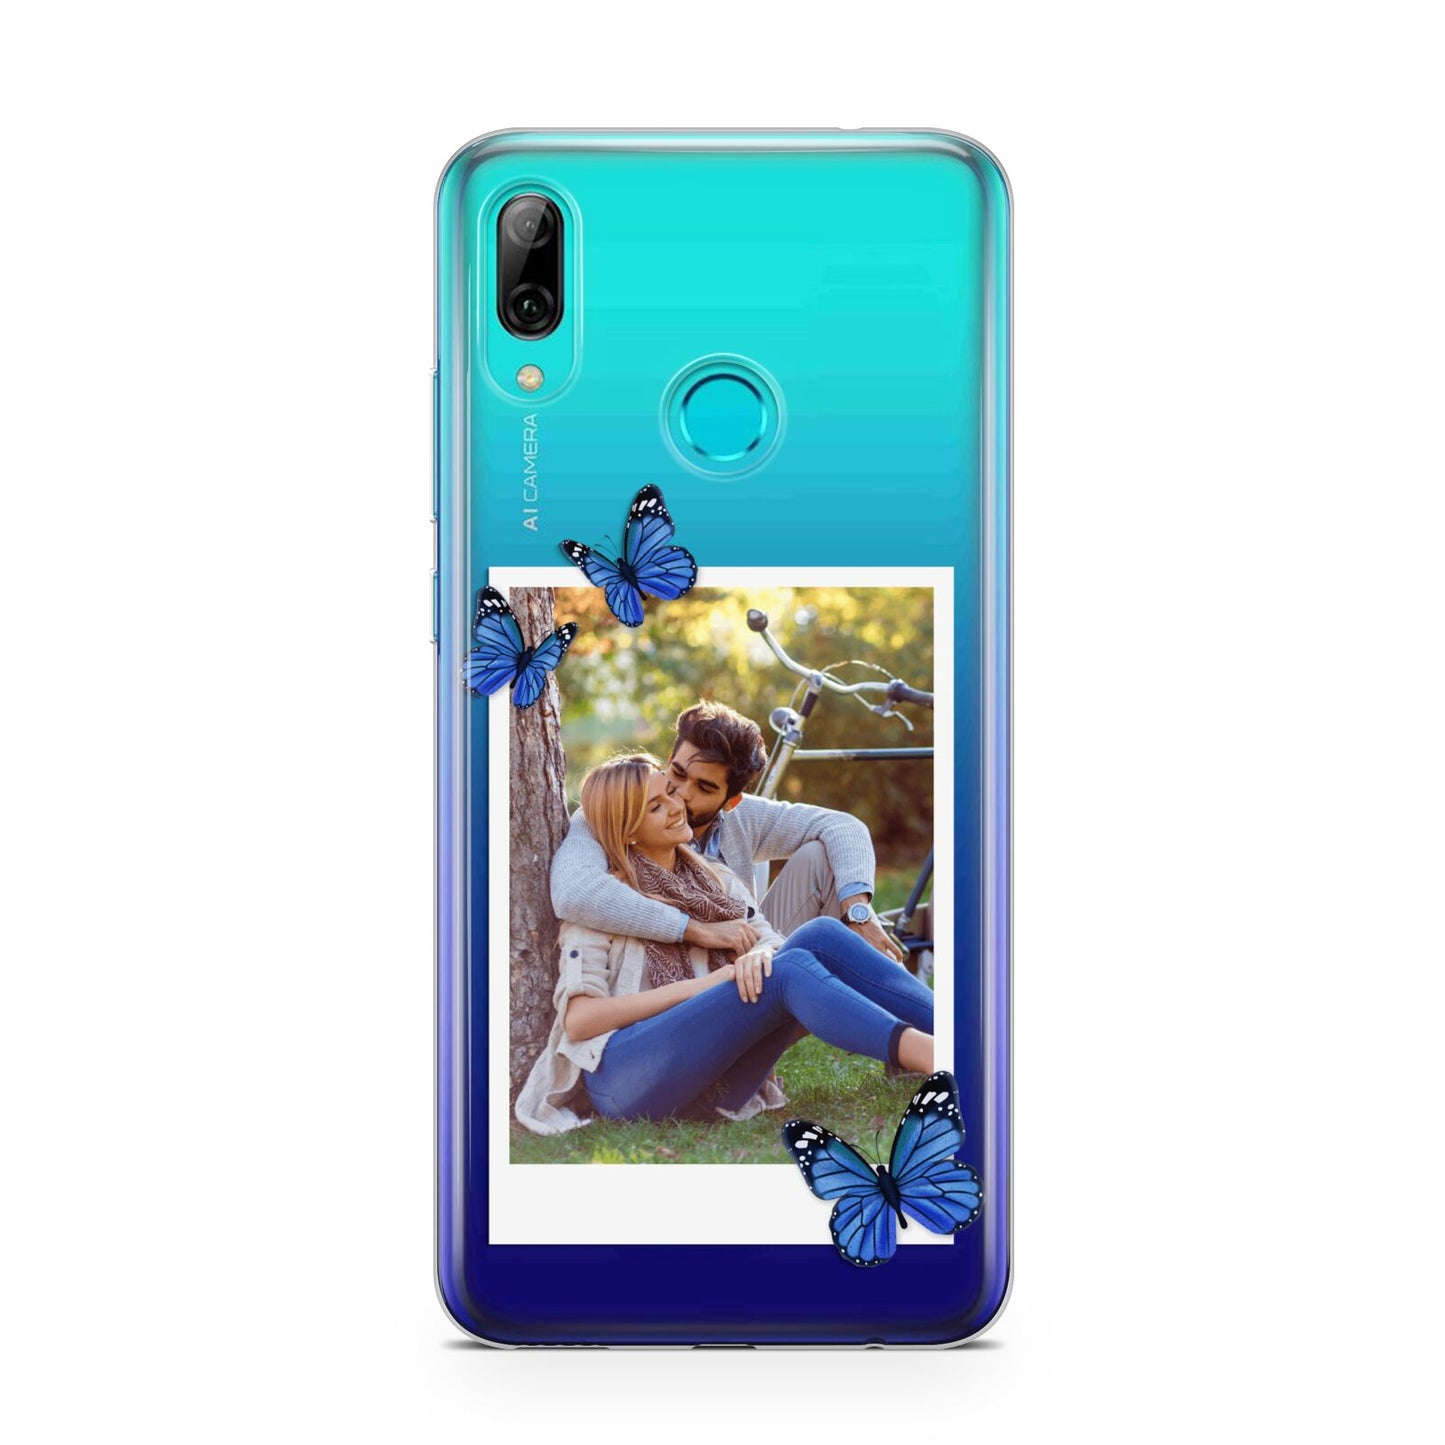 Polaroid Photo Huawei P Smart 2019 Case